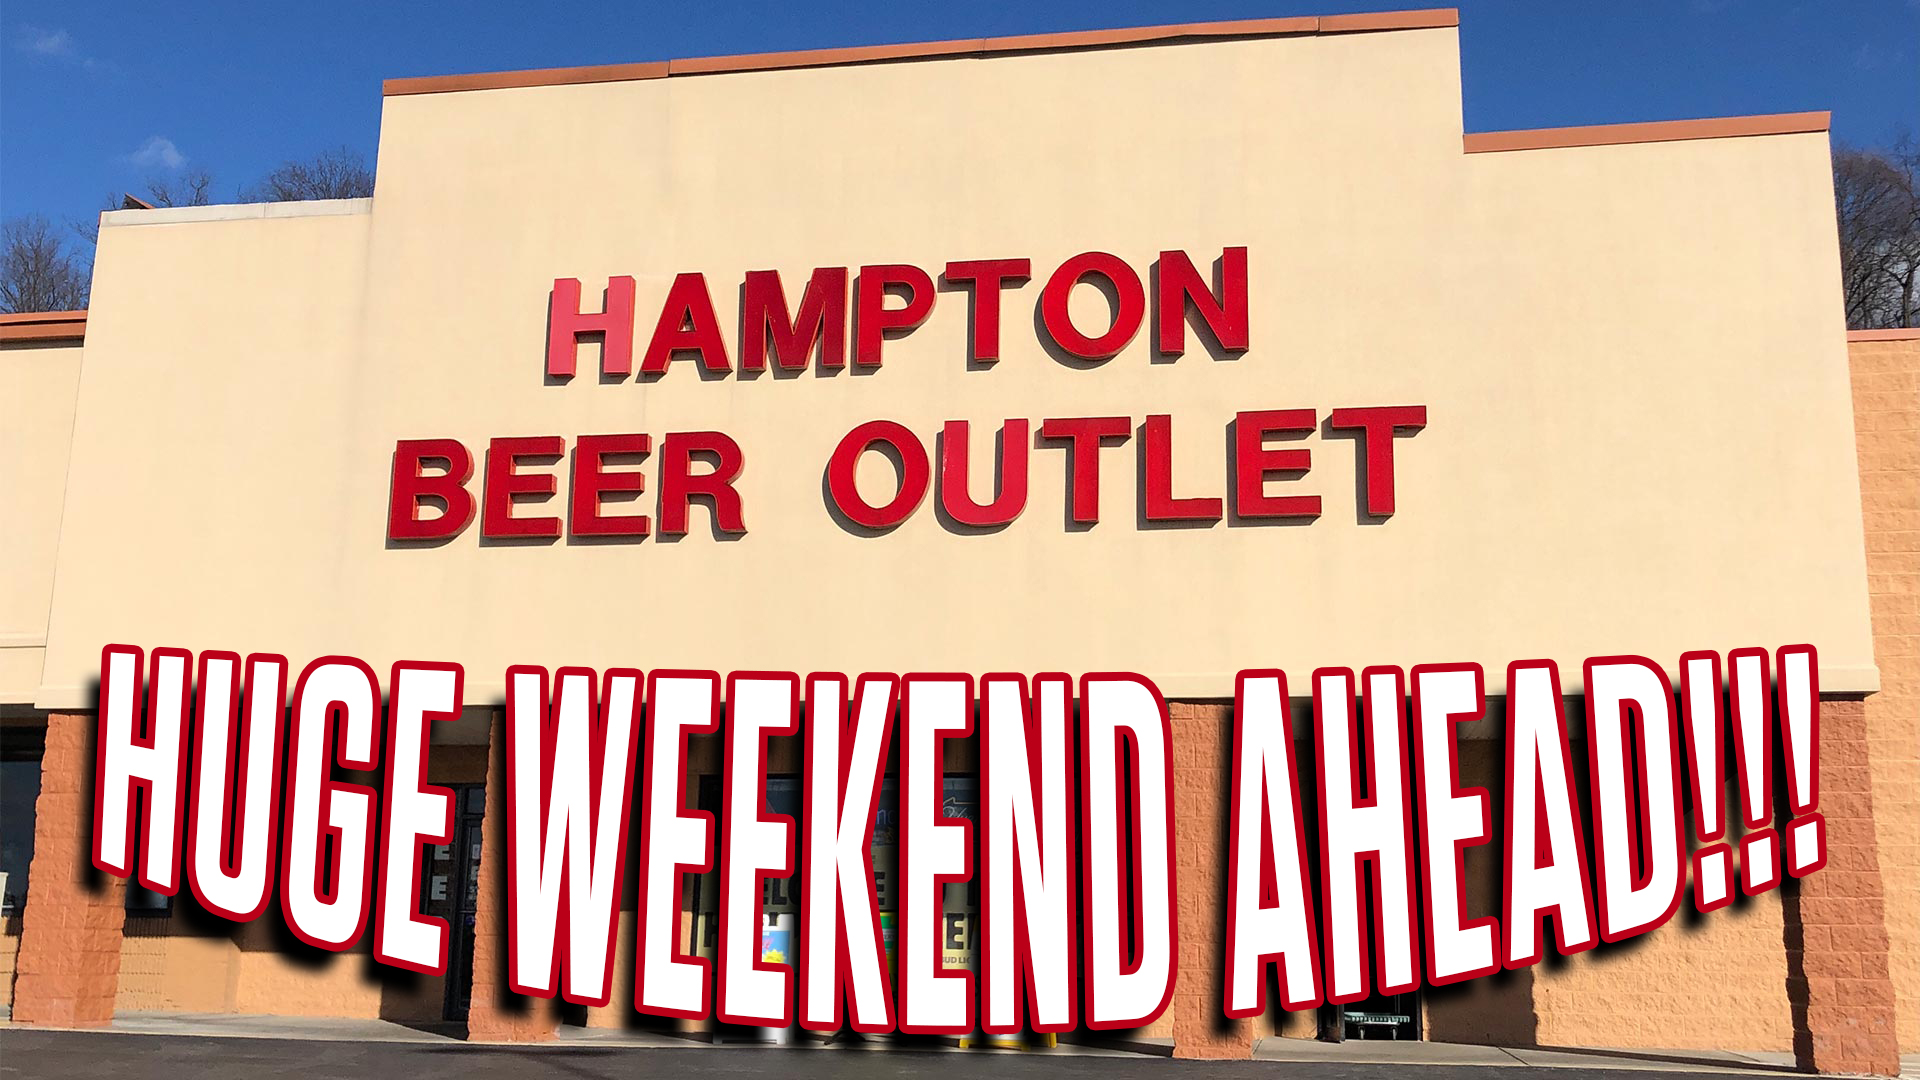 HAMPTON-BEER-OUTLET-HUGE-WEEKEND-JUNE-END